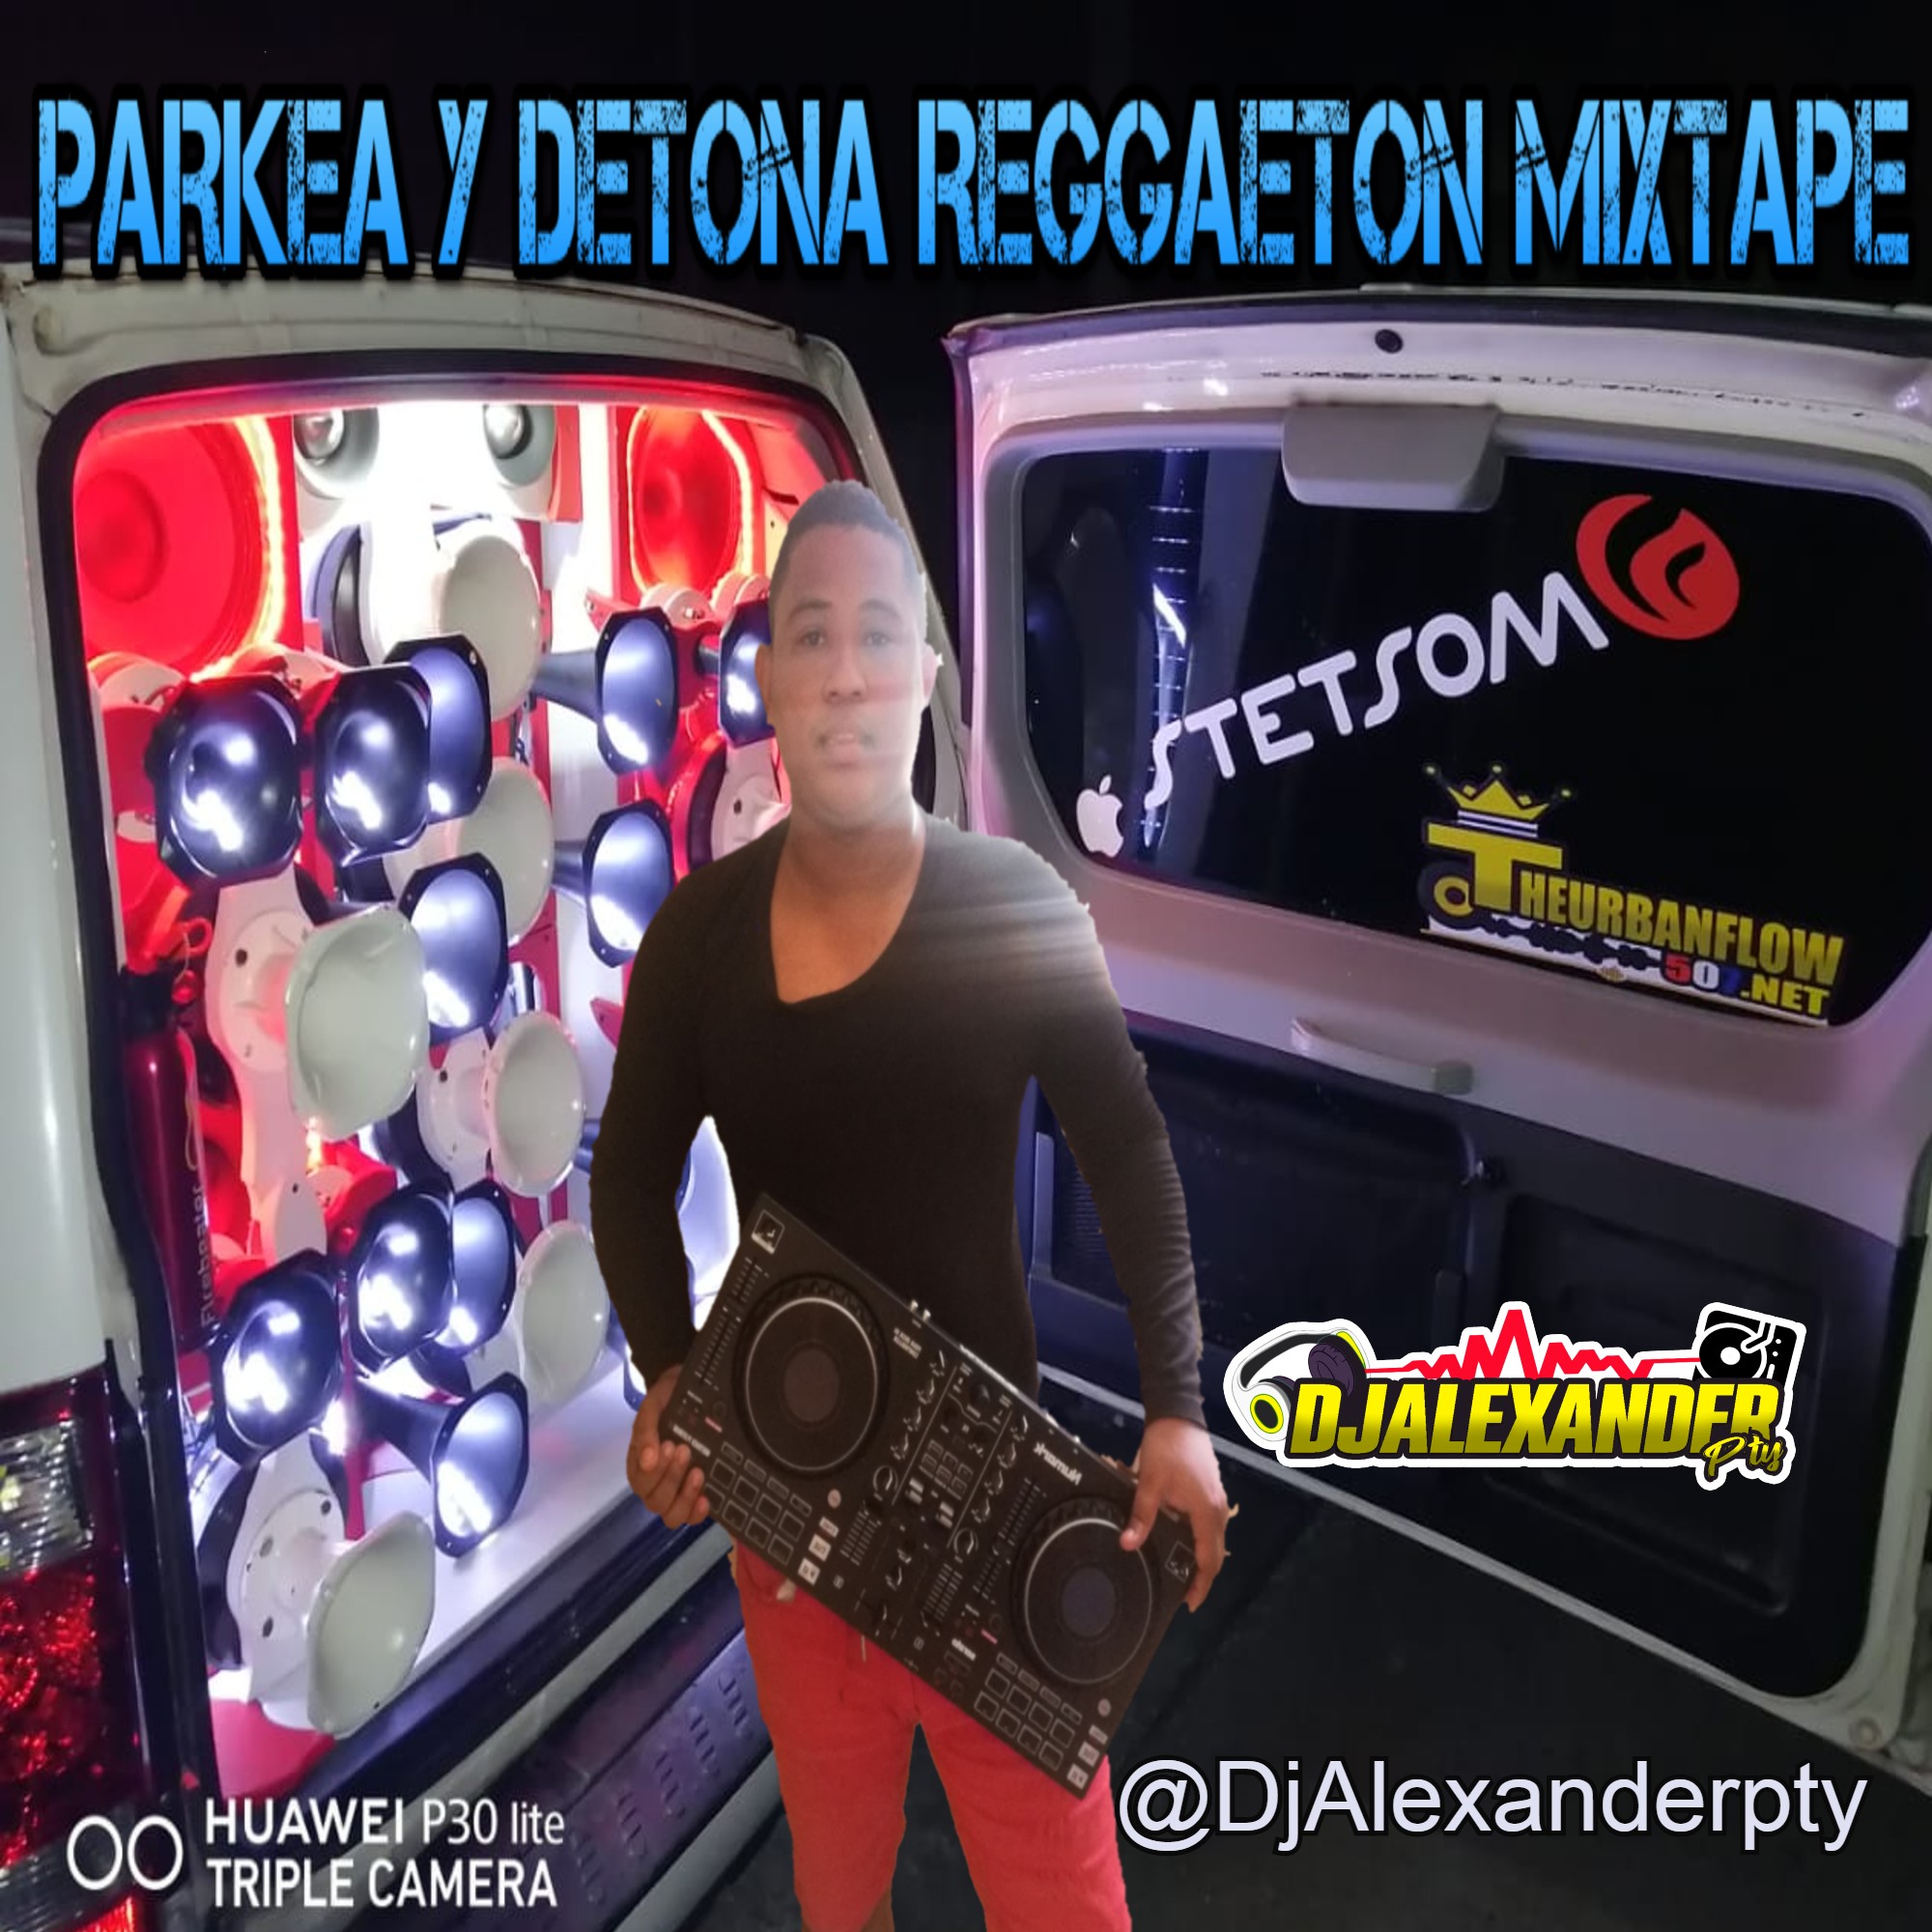 Parkea y Detona Reggaeton Mixtape - DjAlexanderpty